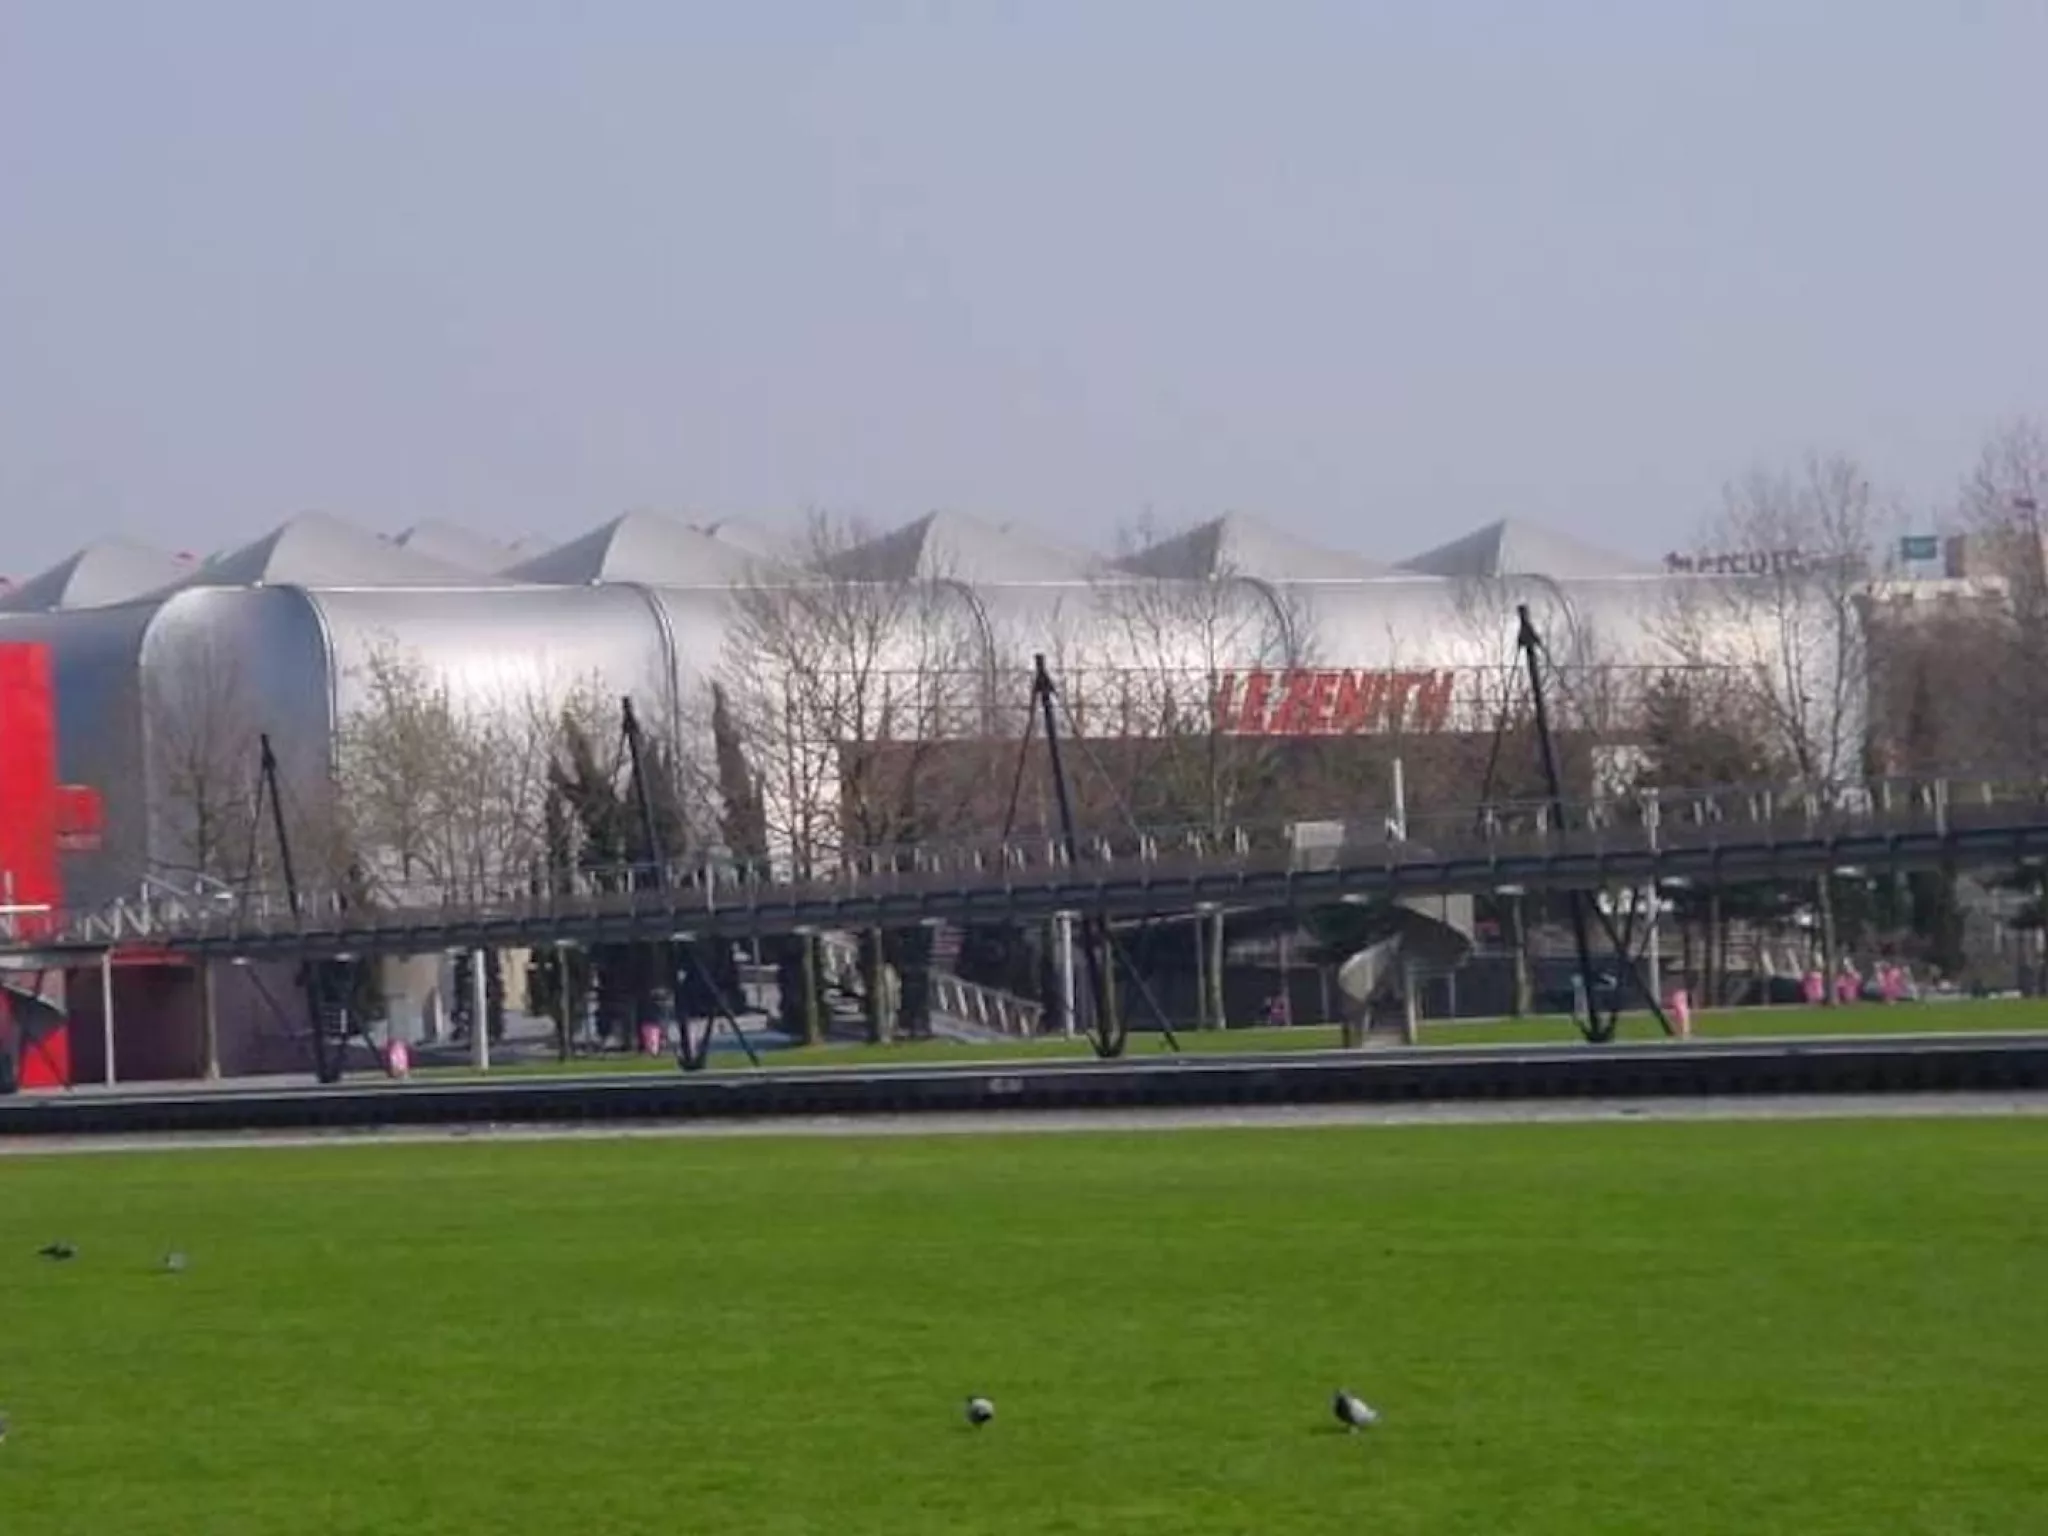 Parc de la Villette